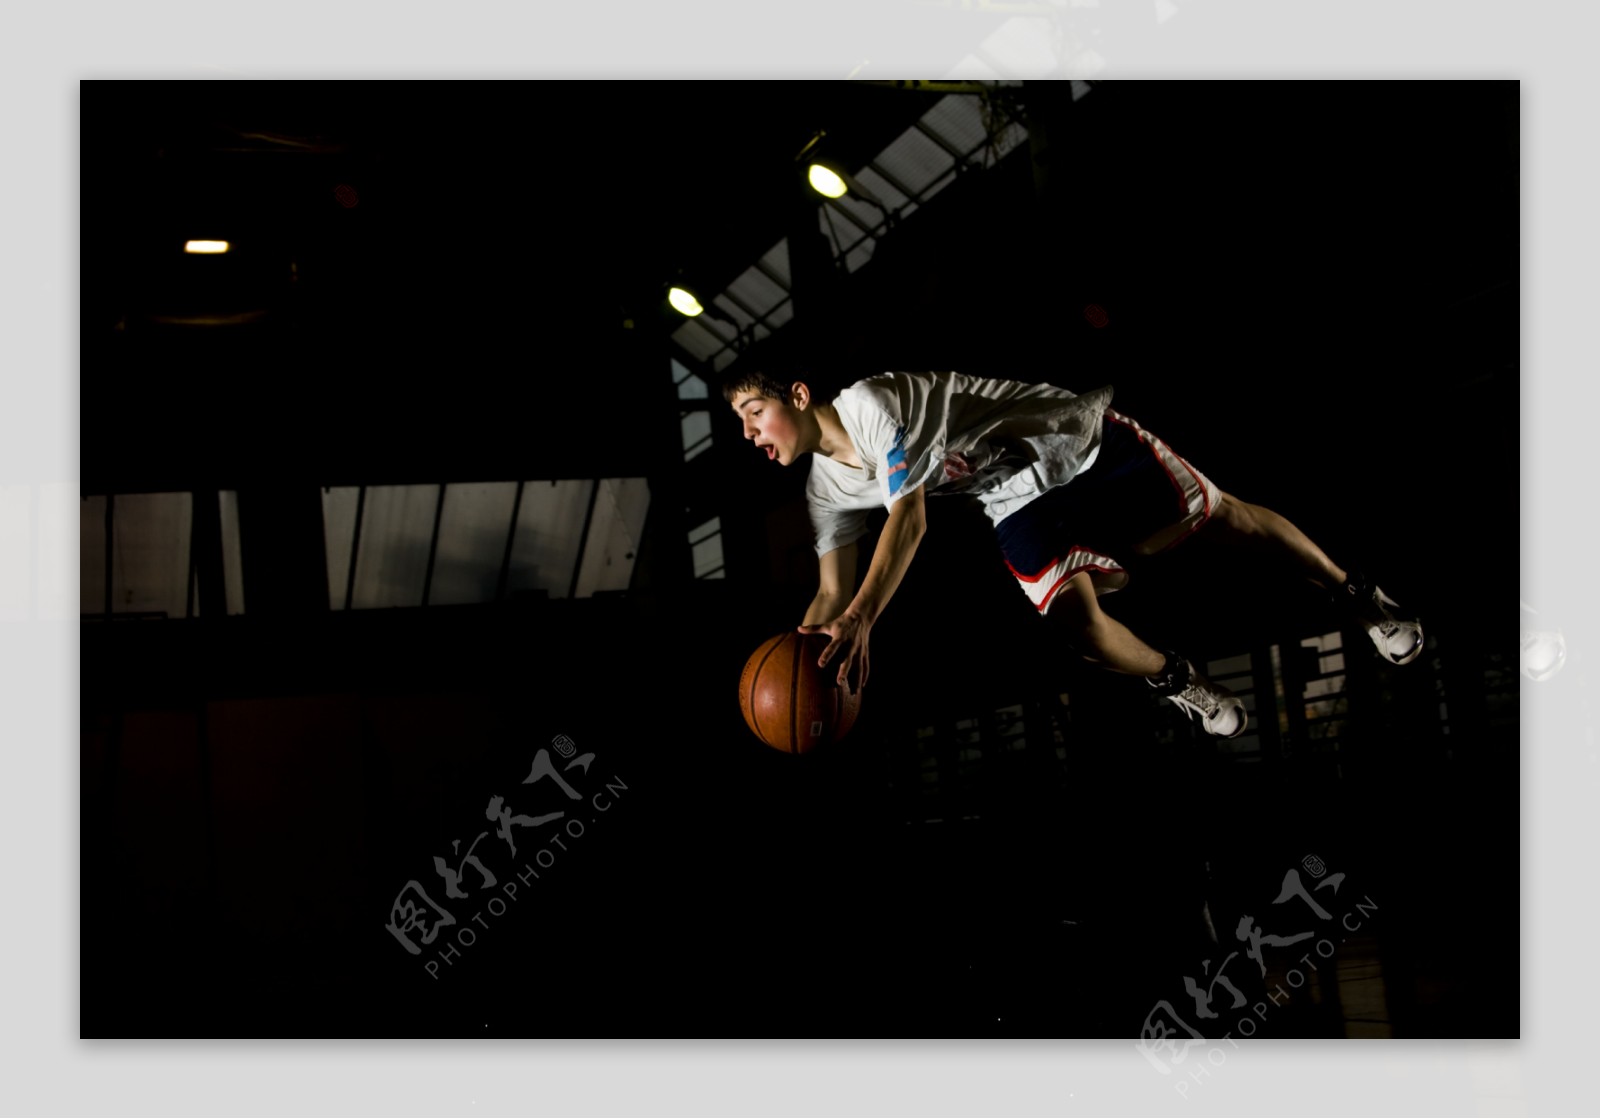 飞身扣篮的篮球运动员图片